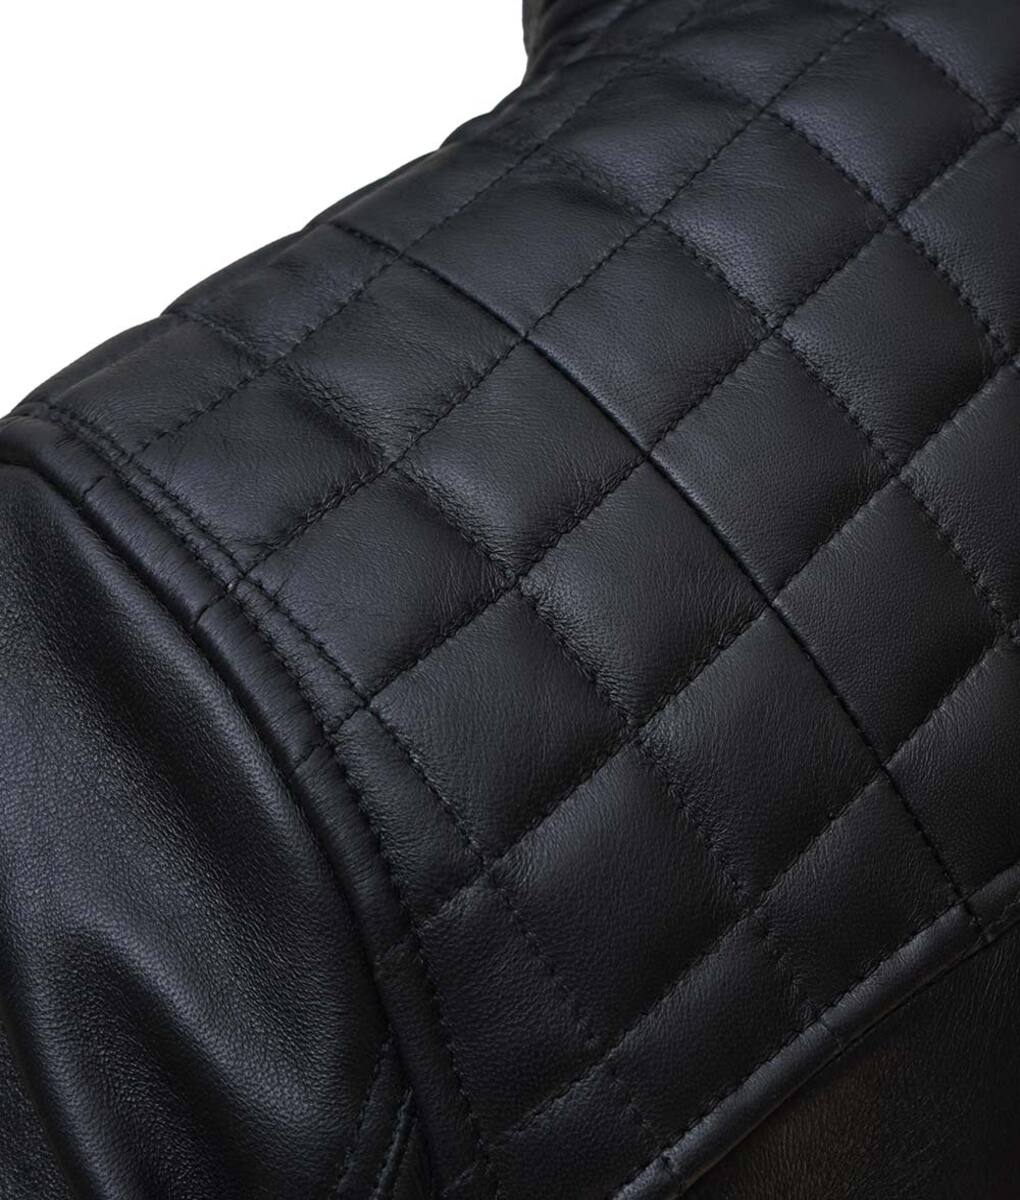 Black_hooded_leather_jacket_hood